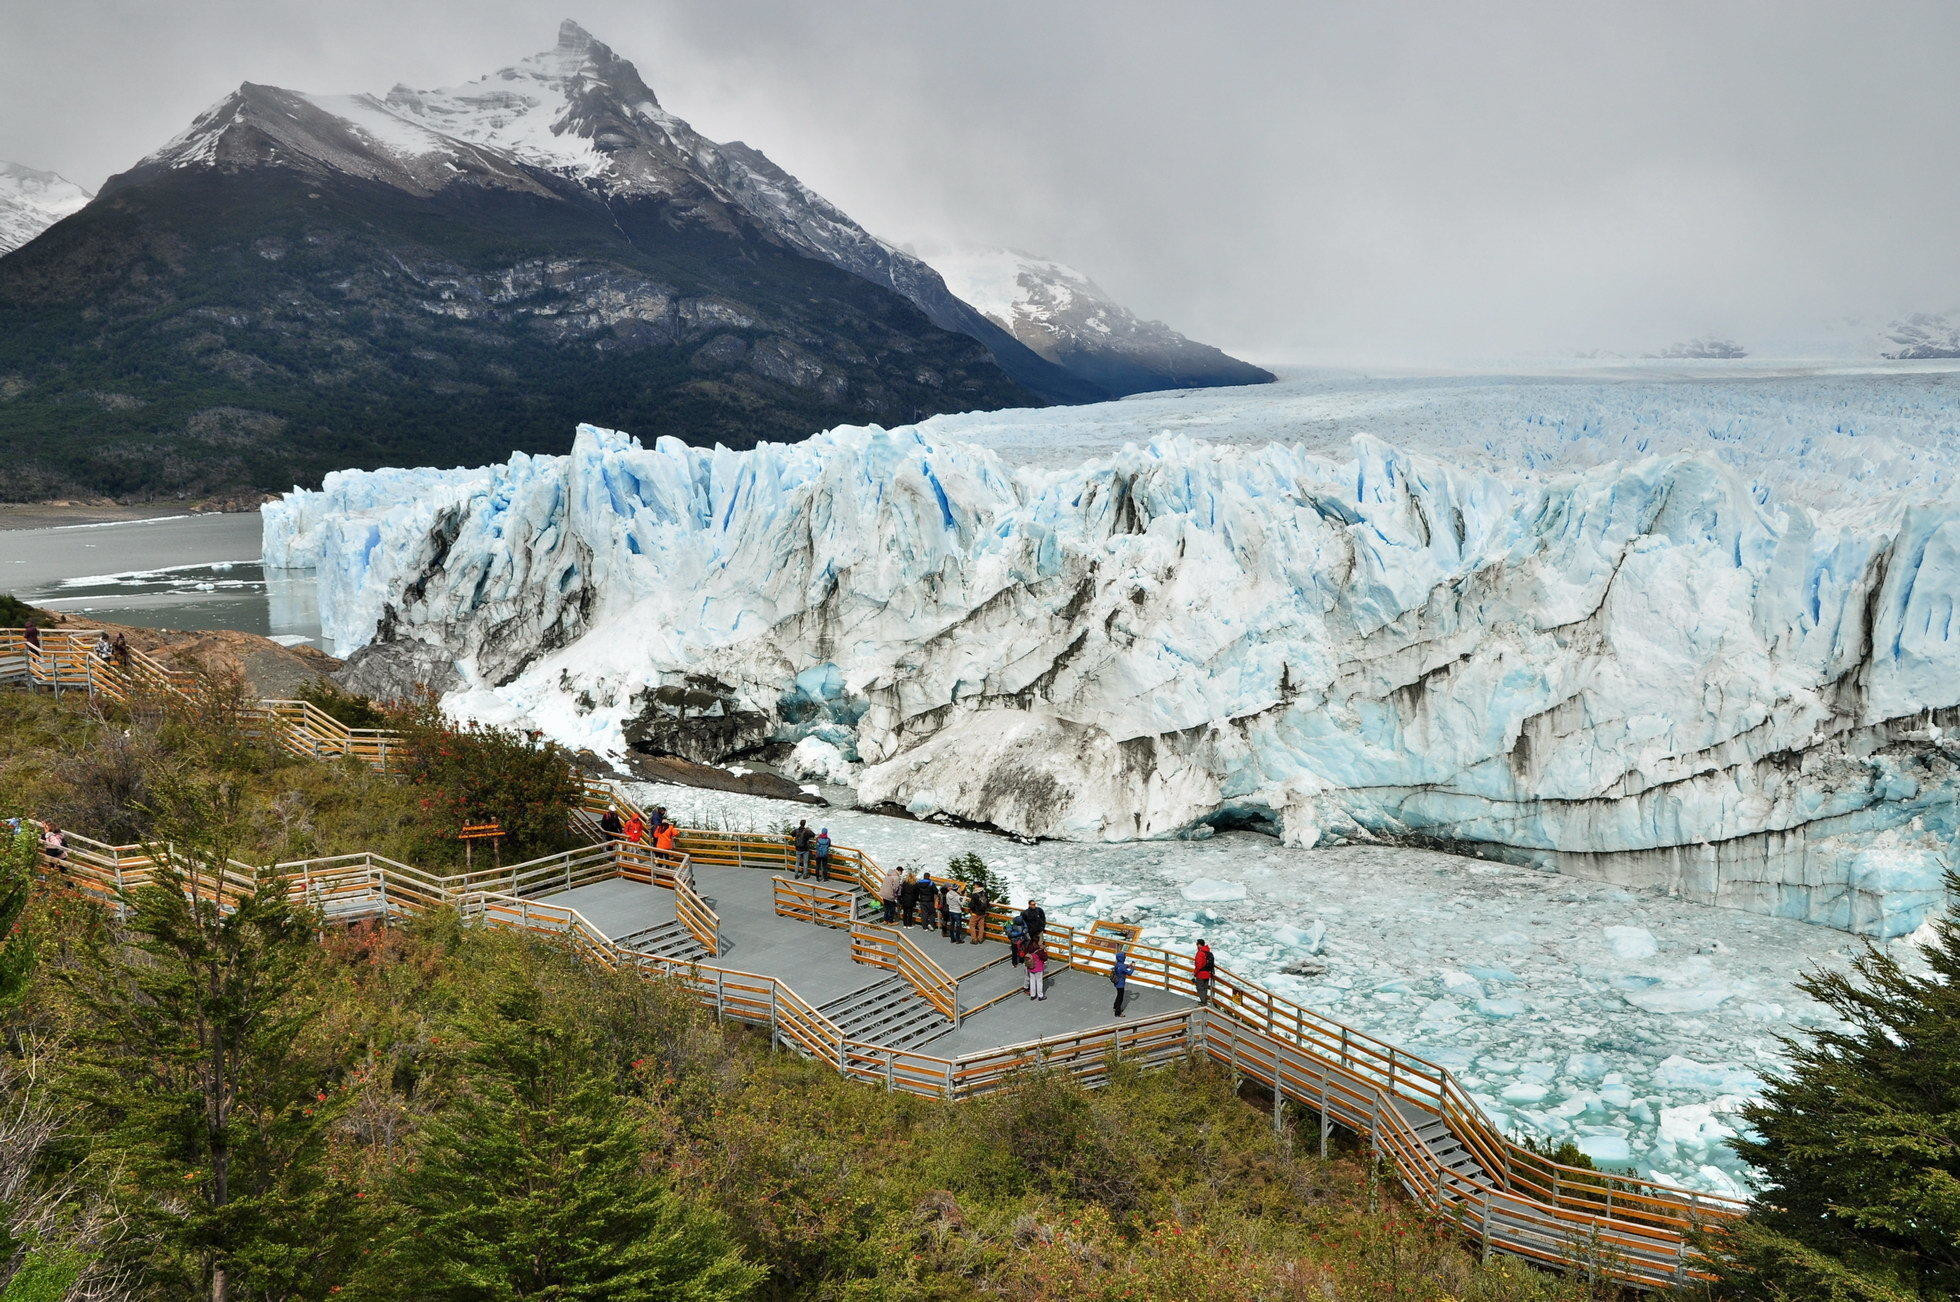 Obrovský ľadovec Perito Moreno je naozaj jednou z top atrakcií Argentíny